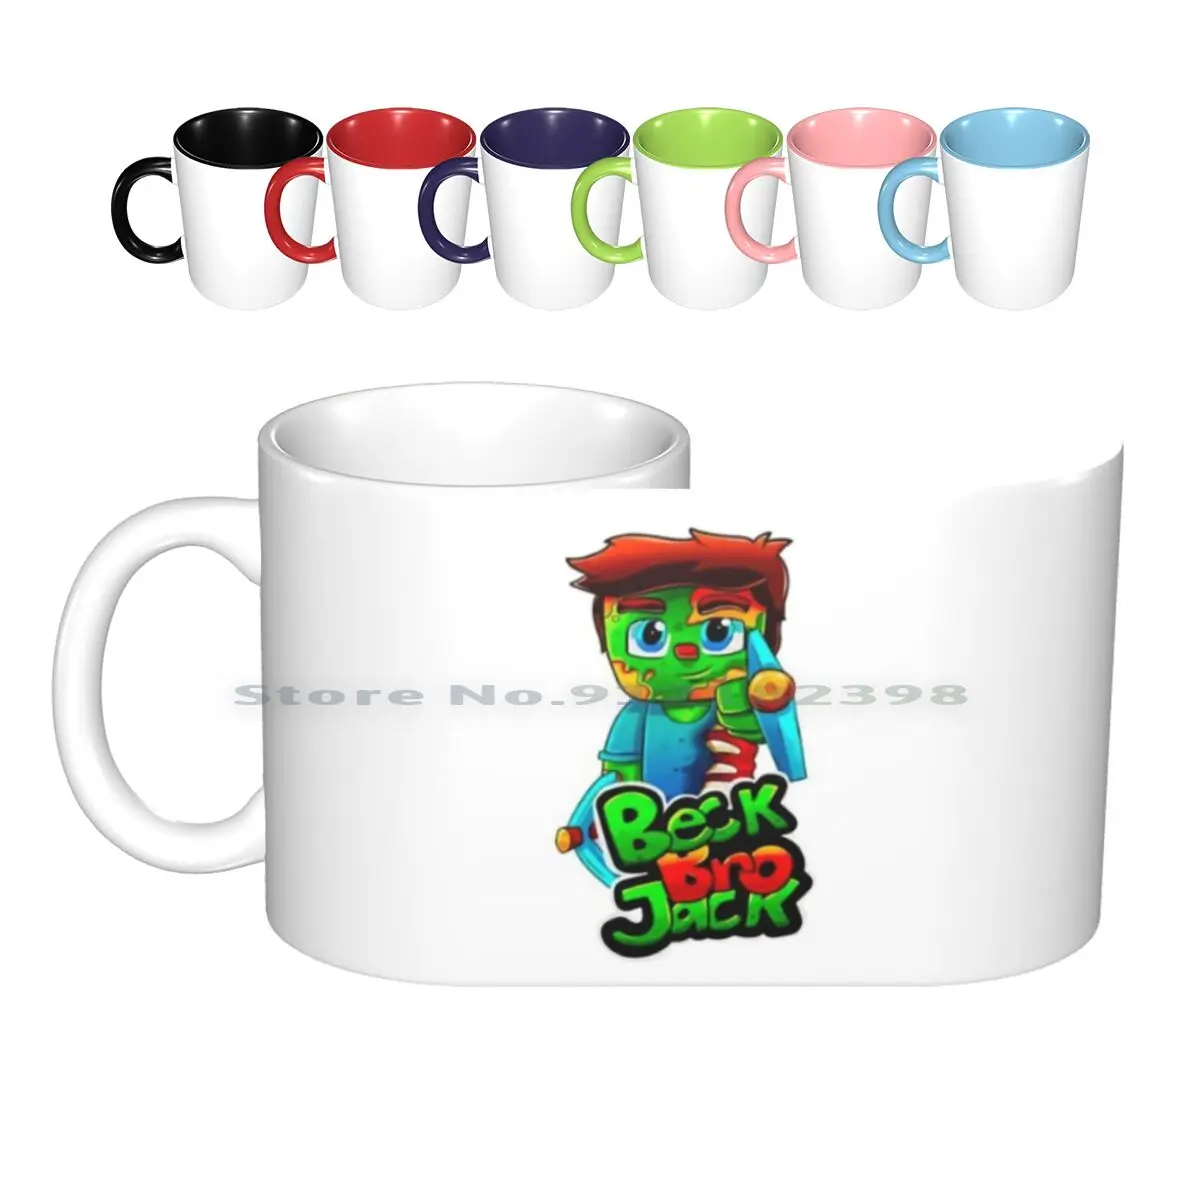 

Beckbrojack-игровые керамические кружки, кофейные чашки, кружка для молока и чая, Beckbrojack, игровые, Beck Bro Jack